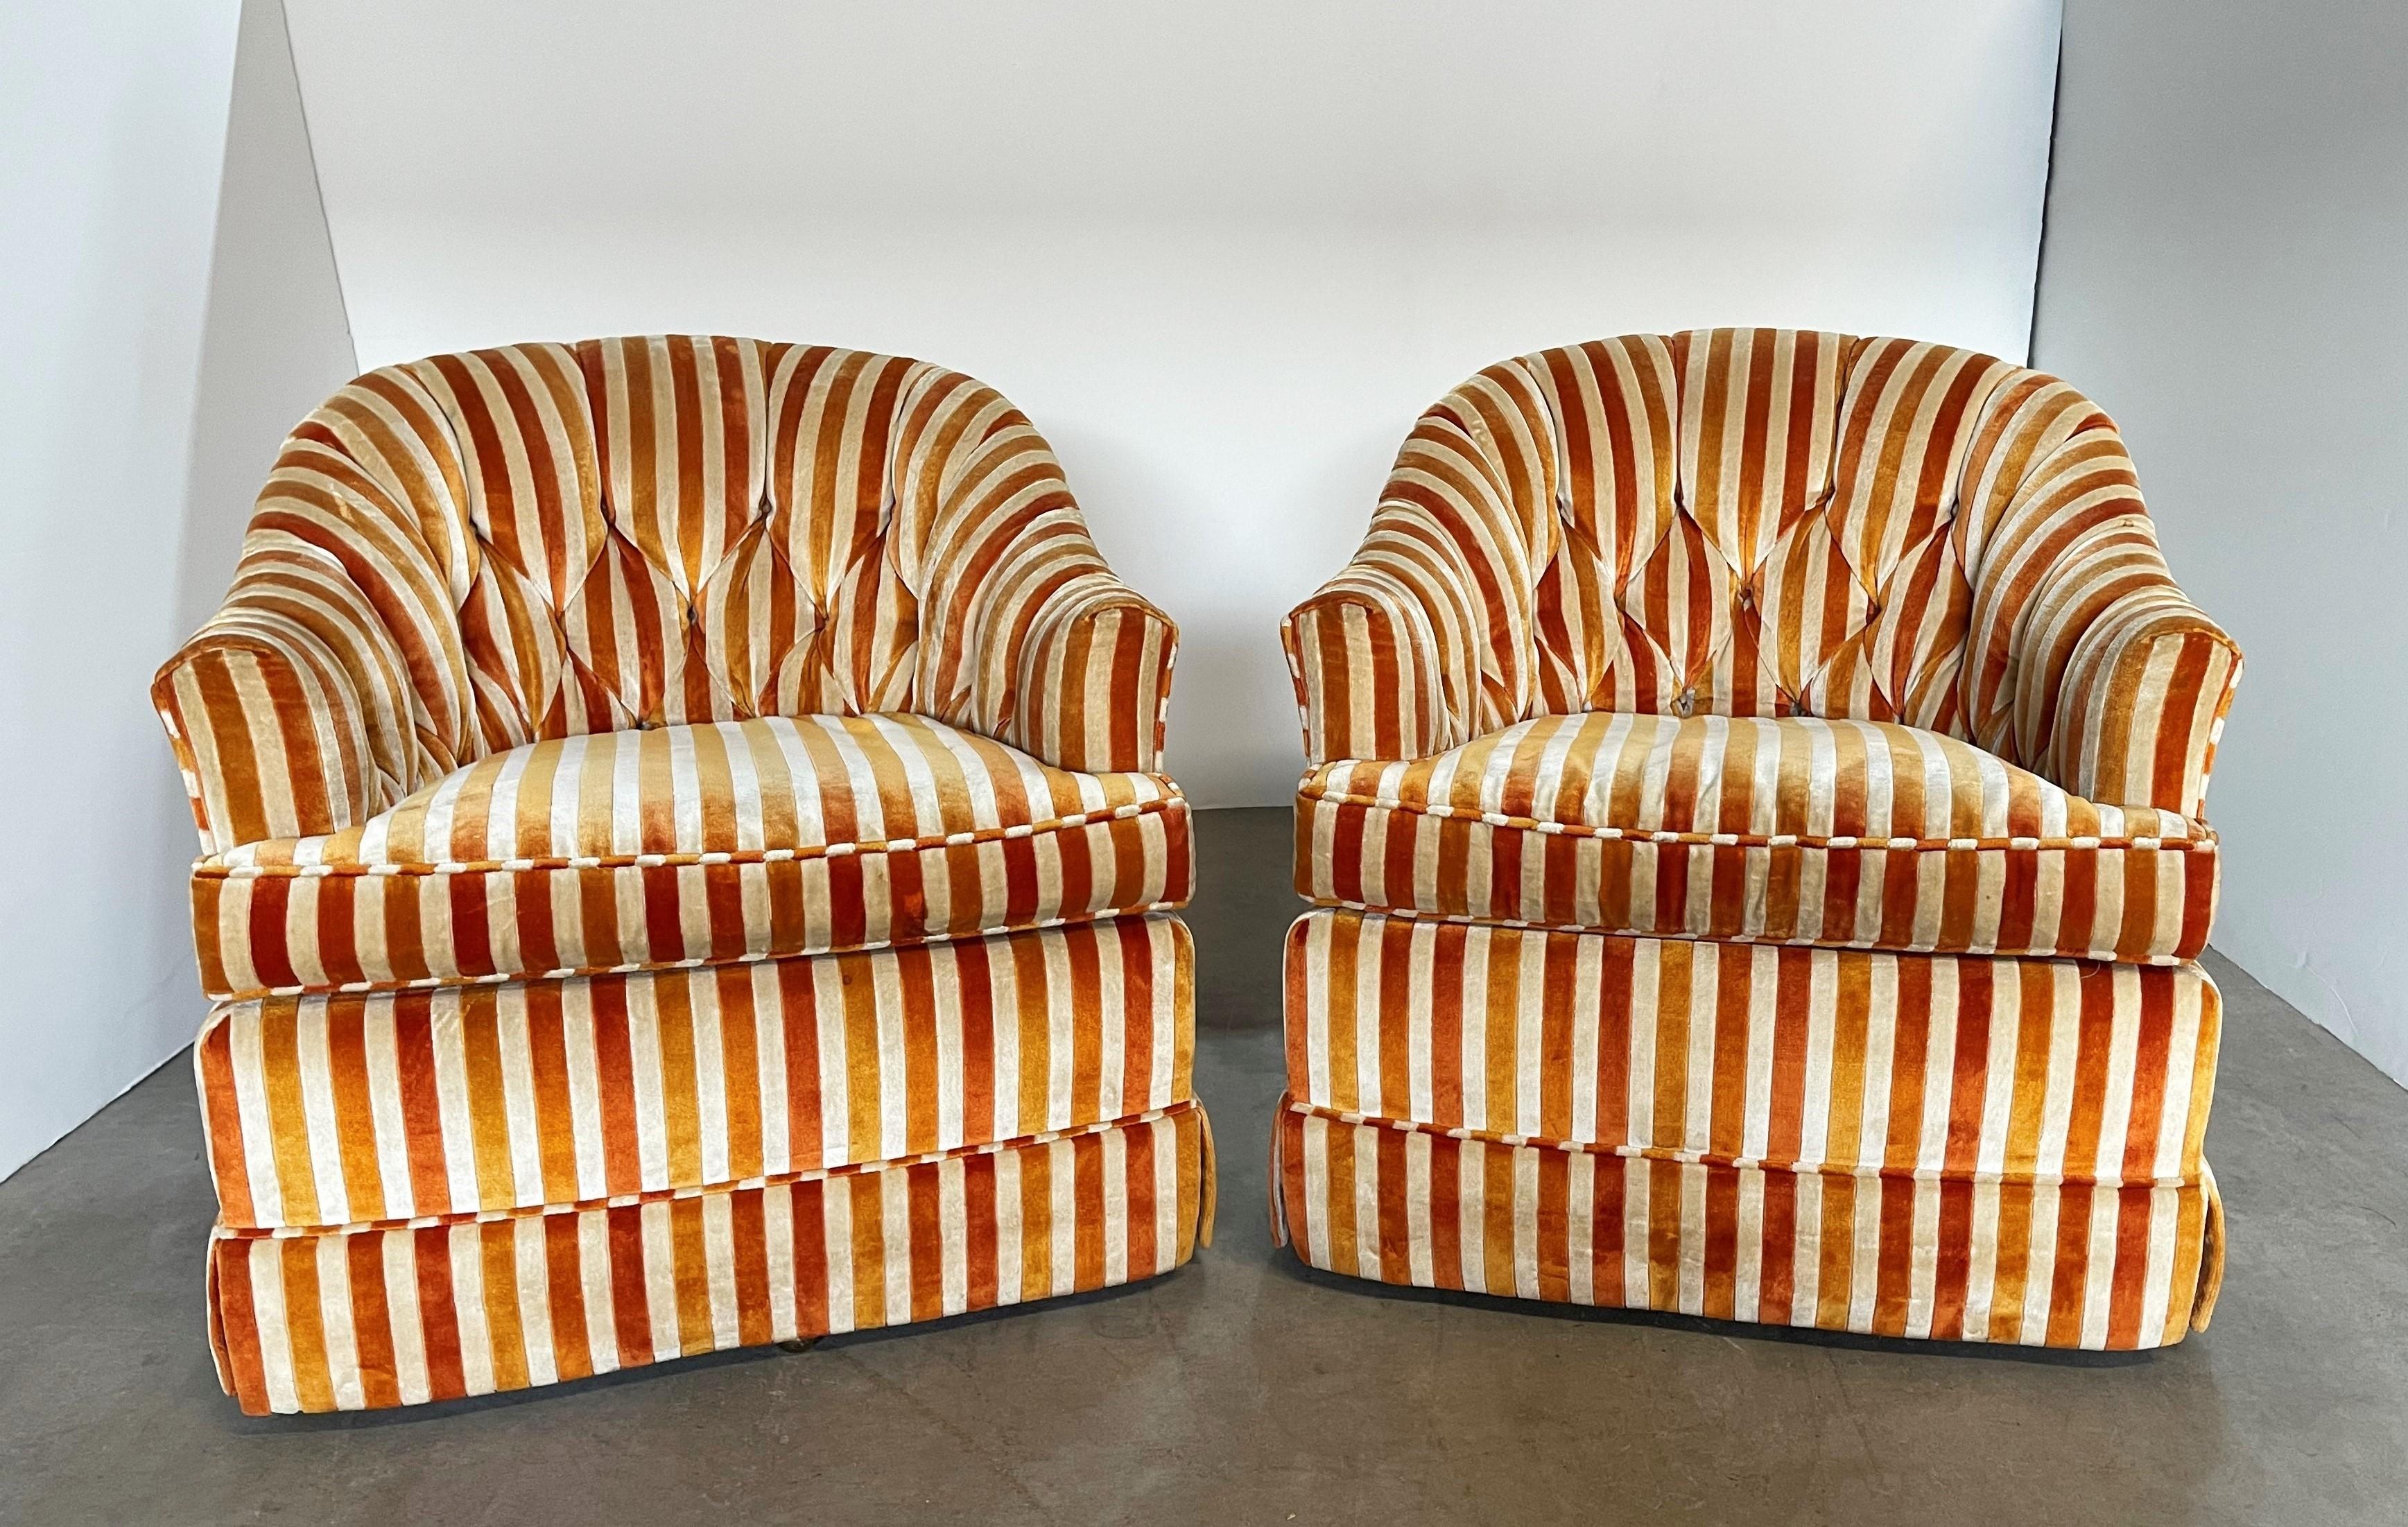 Fauteuils club lounge vintage très cossus et confortables conçus par Kay Lambeth, vers 1964. Les chaises sont dotées d'un cadre en bois massif, d'un dossier en forme de tonneau, d'un rembourrage original touffeté, d'un coussin de siège séparé et